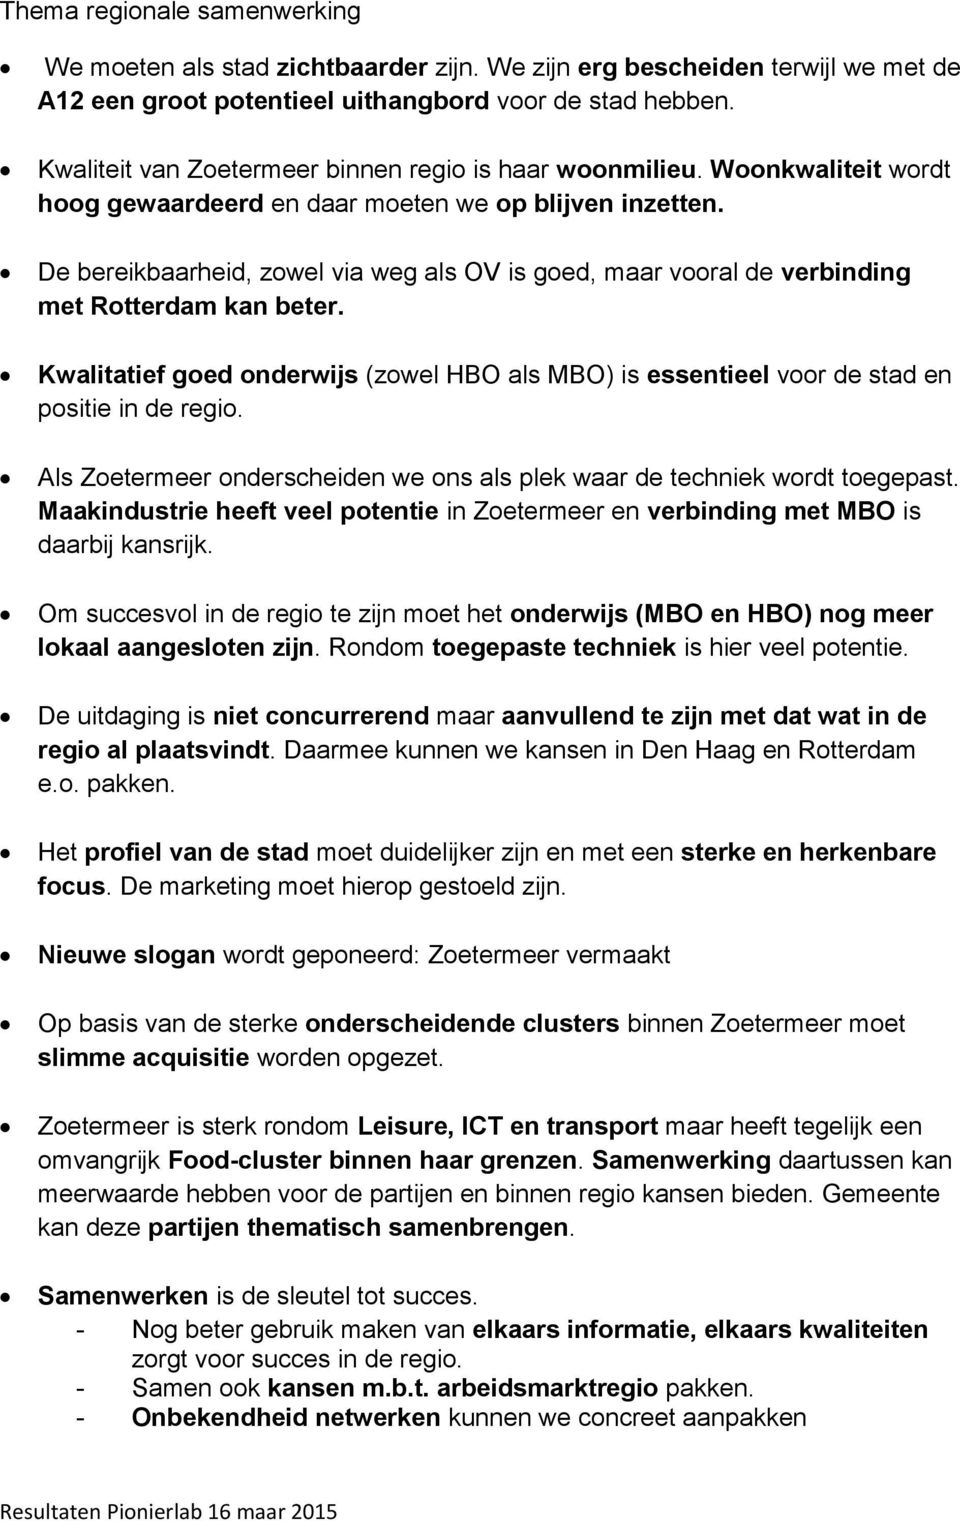 De bereikbaarheid, zowel via weg als OV is goed, maar vooral de verbinding met Rotterdam kan beter. Kwalitatief goed onderwijs (zowel HBO als MBO) is essentieel voor de stad en positie in de regio.